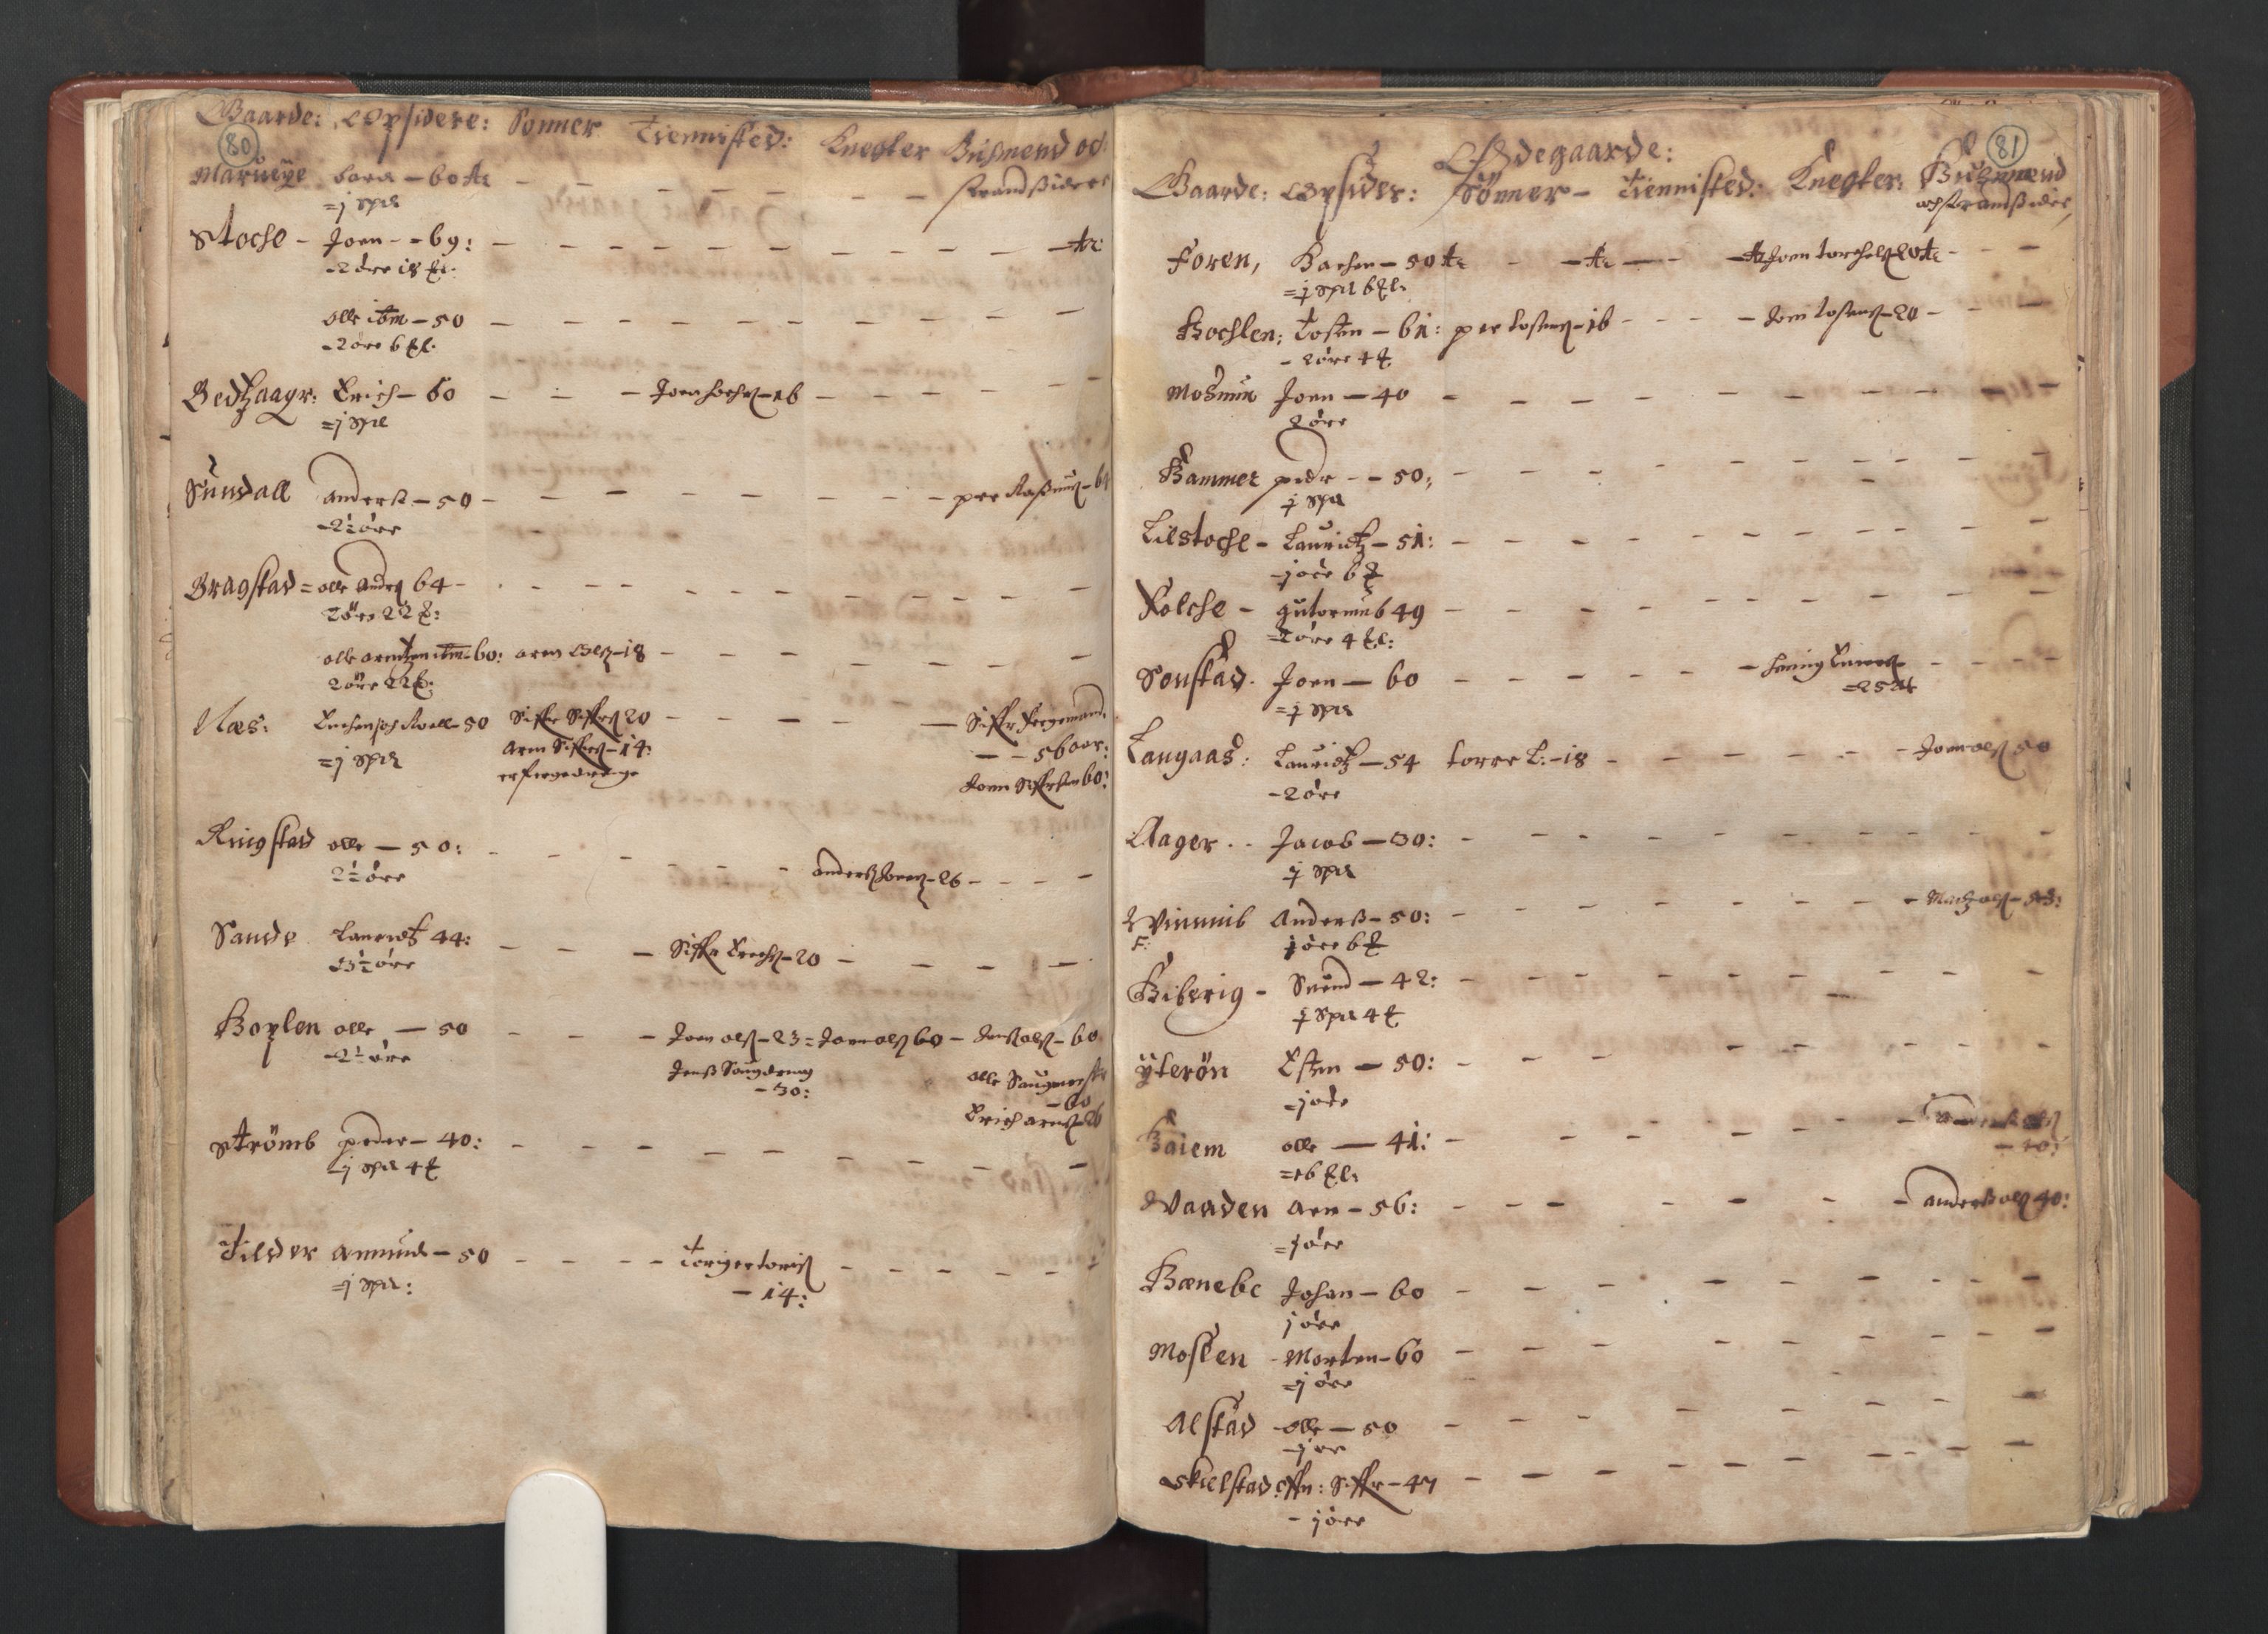 RA, Bailiff's Census 1664-1666, no. 19: Fosen fogderi, Inderøy fogderi, Selbu fogderi, Namdal fogderi and Stjørdal fogderi, 1664-1665, p. 80-81